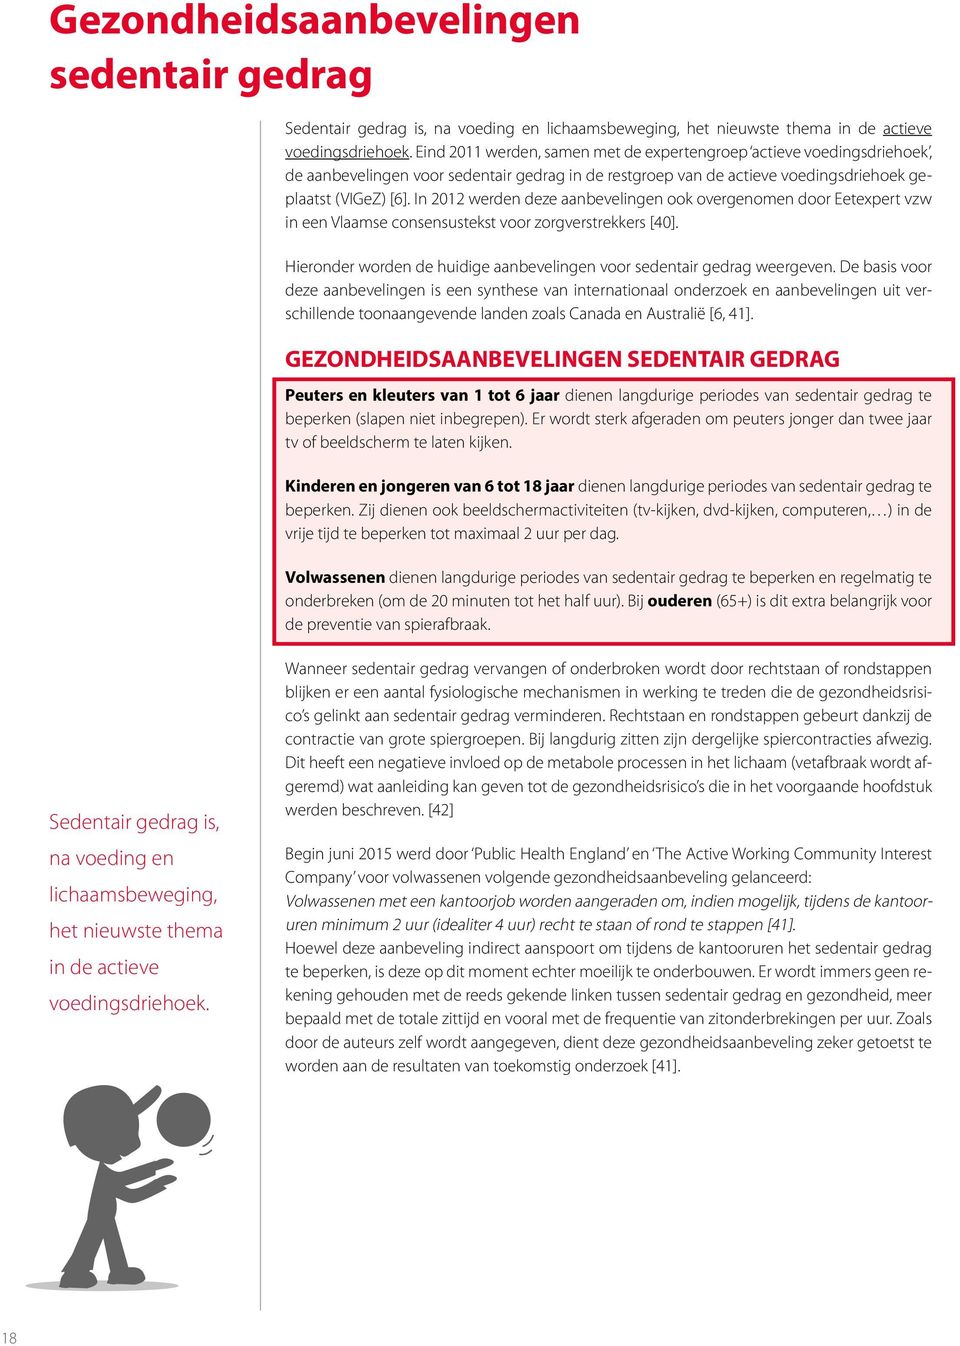 In 2012 werden deze aanbevelingen ook overgenomen door Eetexpert vzw in een Vlaamse consensustekst voor zorgverstrekkers [40].